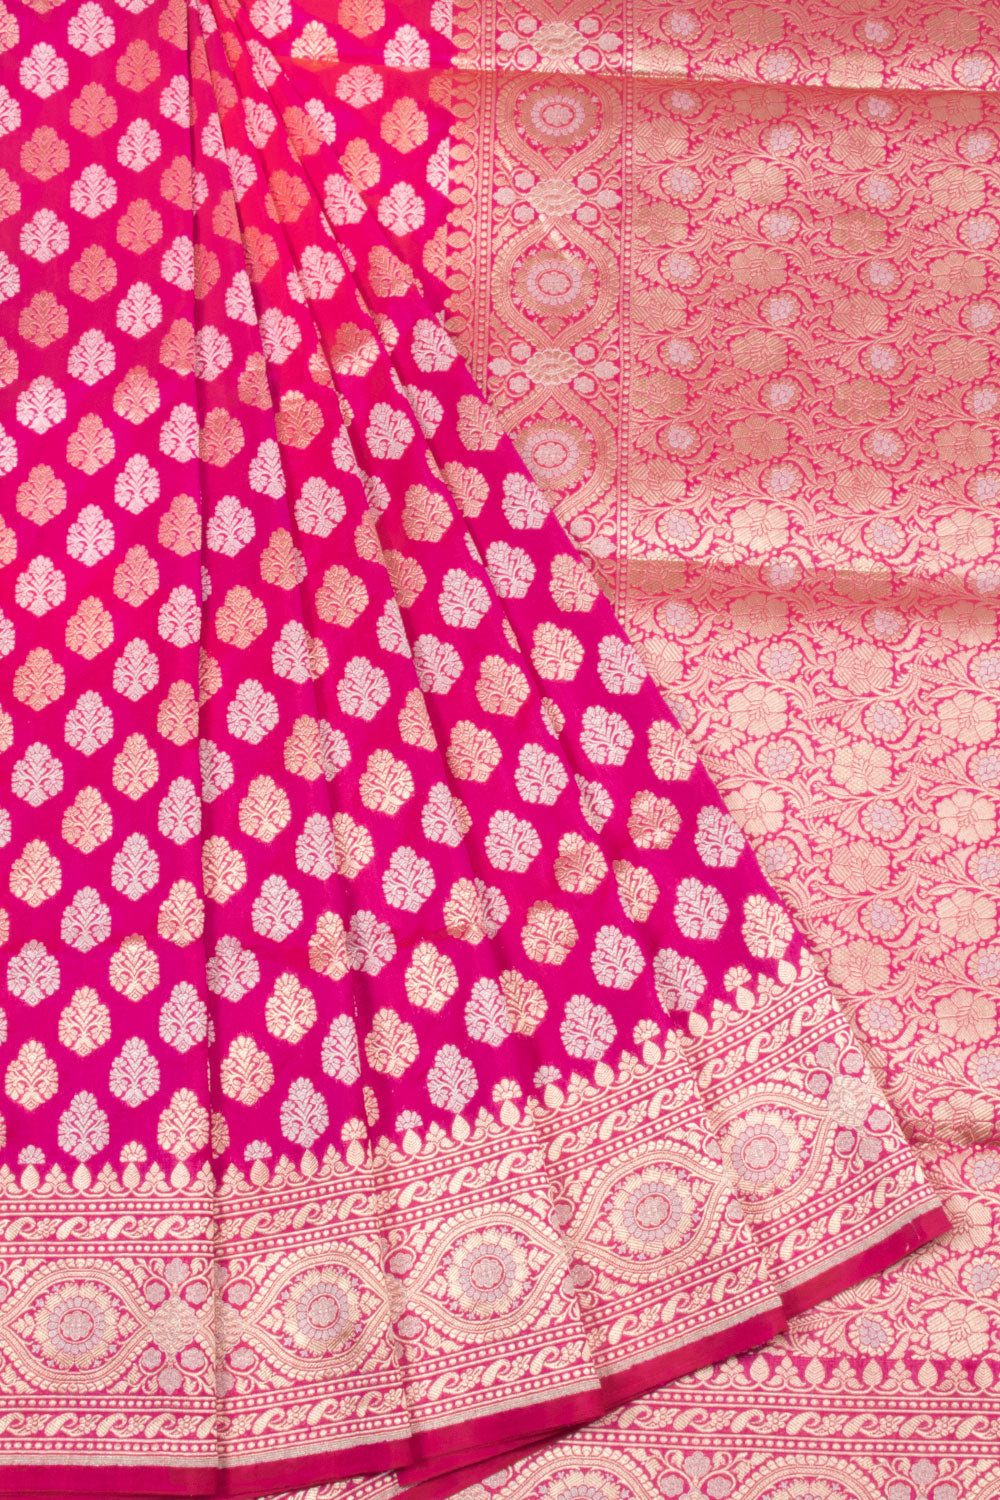 Hot Pink Handloom Banarasi Katan Silk Saree 10063206